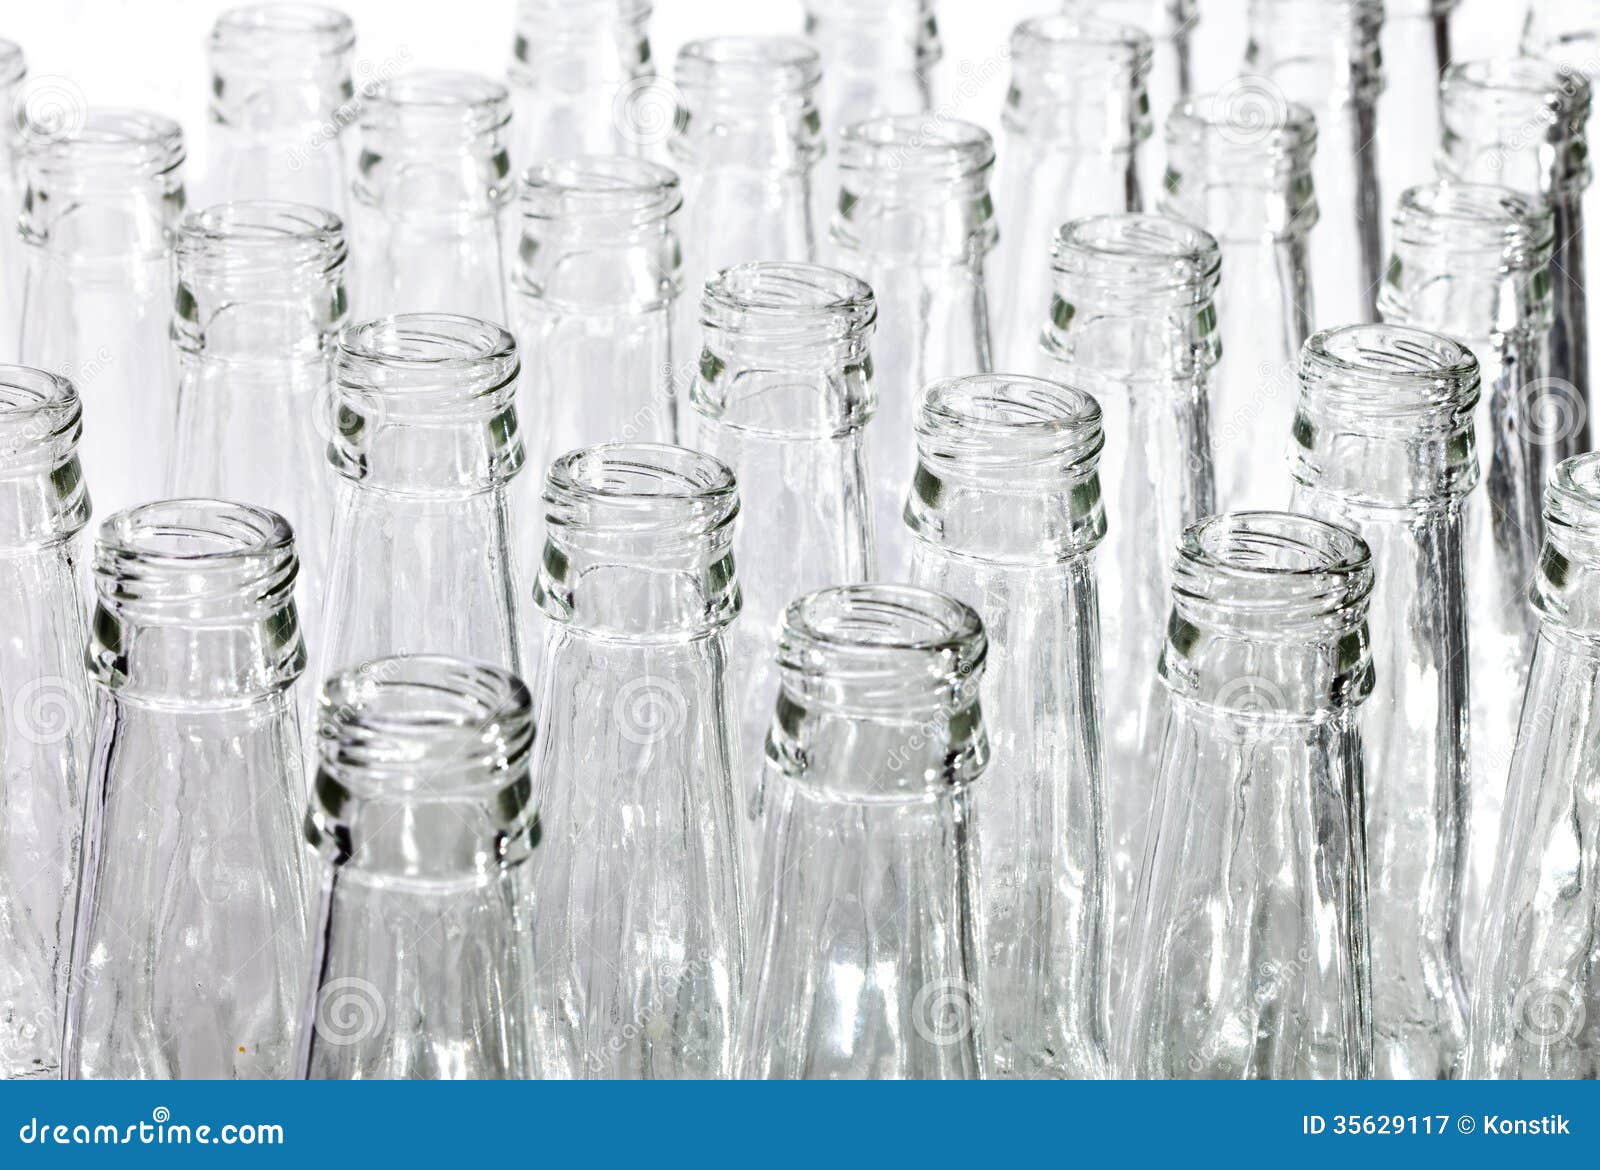 Фон под пустые стеклянные бутылки в IPG. Изображение на столе пустой бутылки стеклянной. Пустые бутылки ставим под стол. Ткань закрывает бутылку.